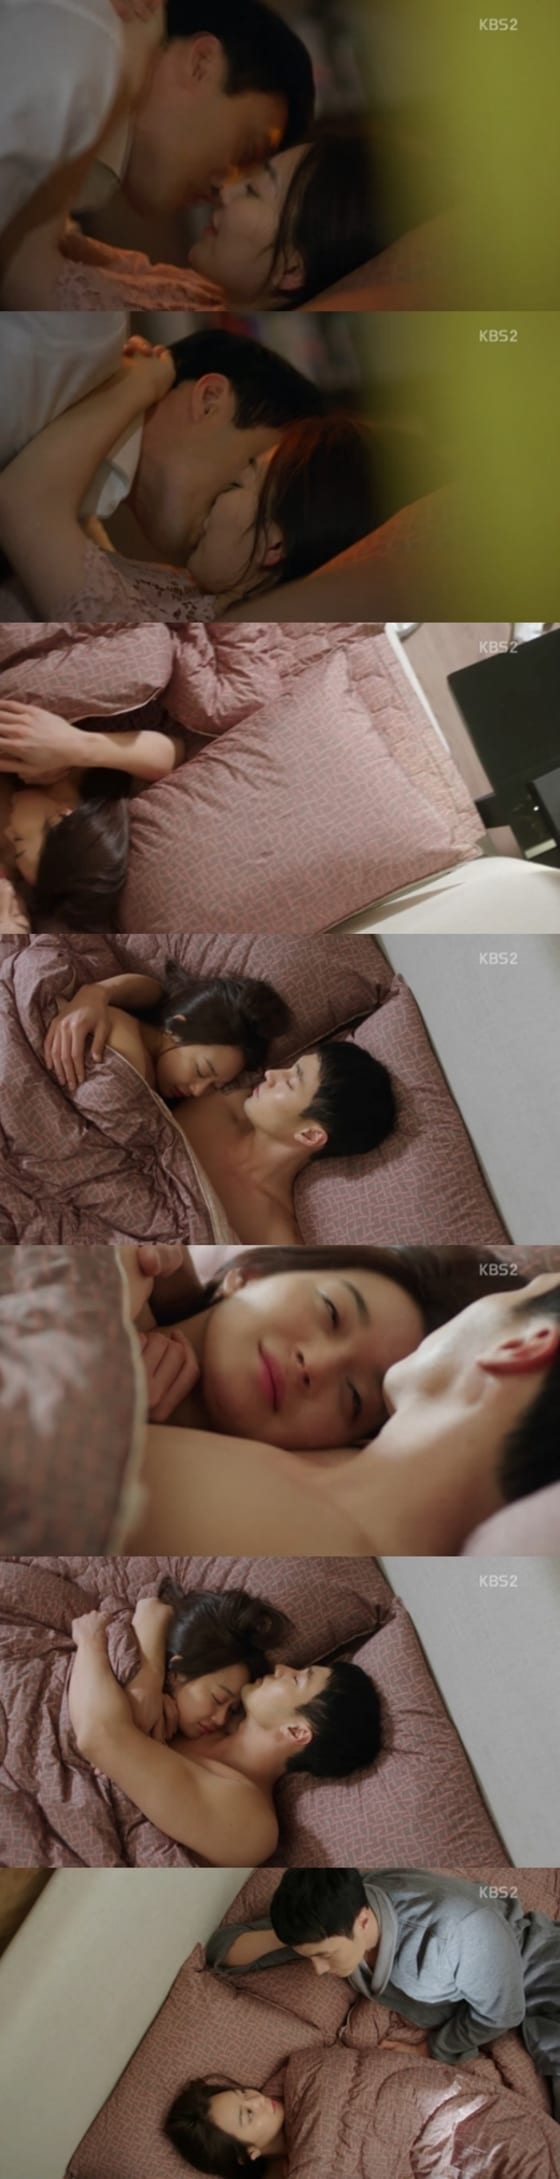 '오 마이 비너스' 소지섭과 신민아가 야한밤을 보냈다.© News1star/ KBS2 '오 마이 비너스' 방송화면 캡처